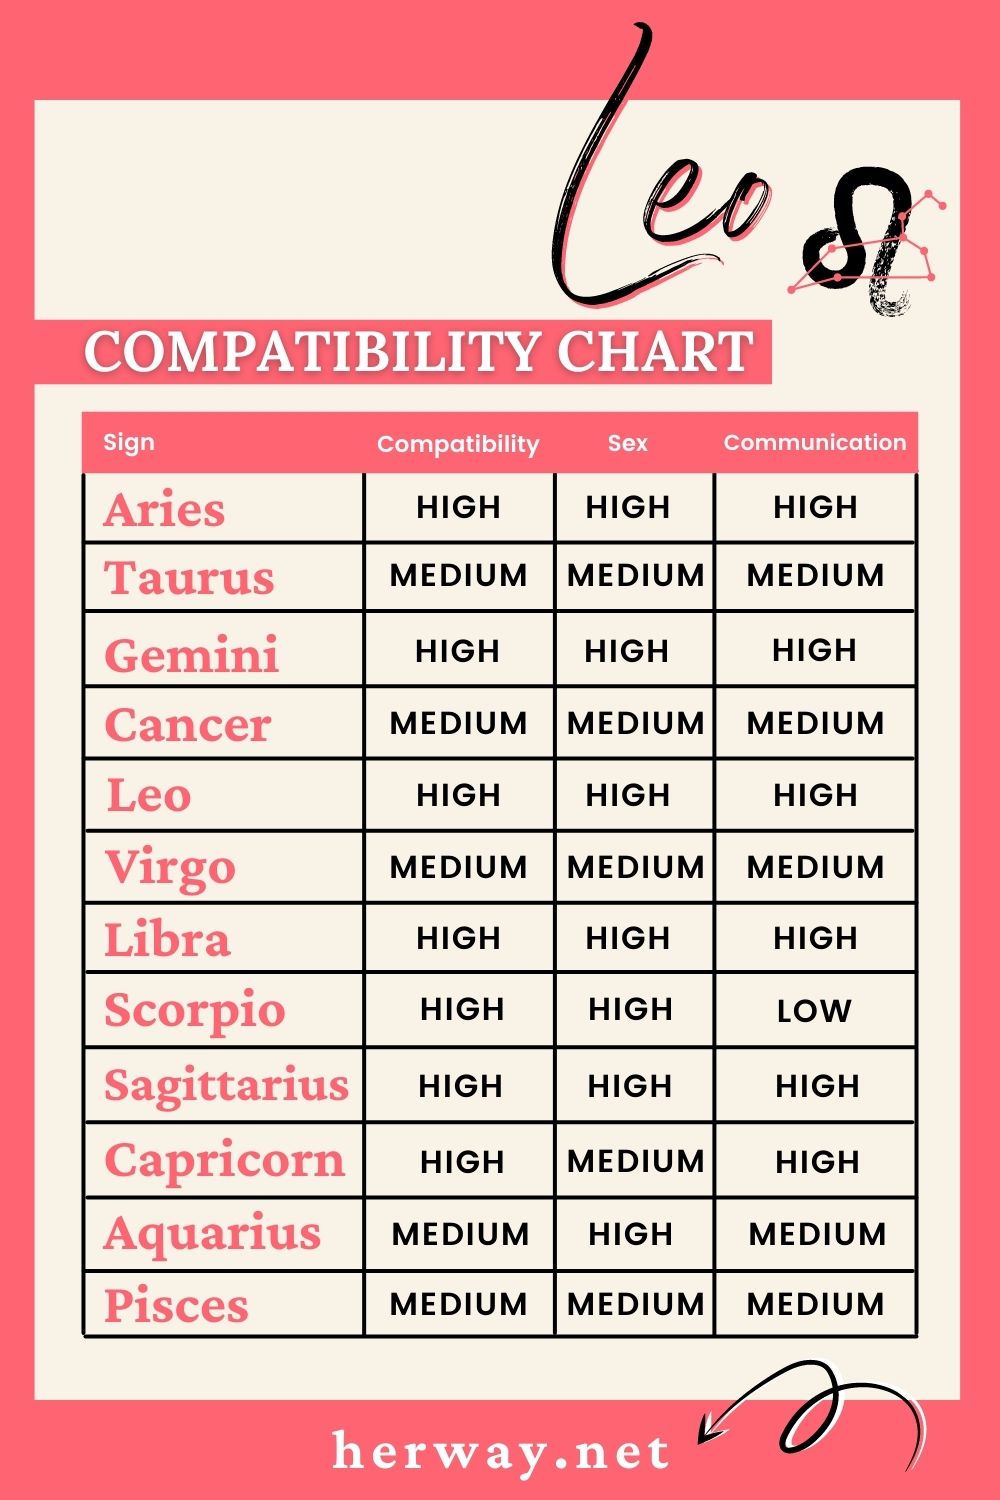 leo compatibility chart